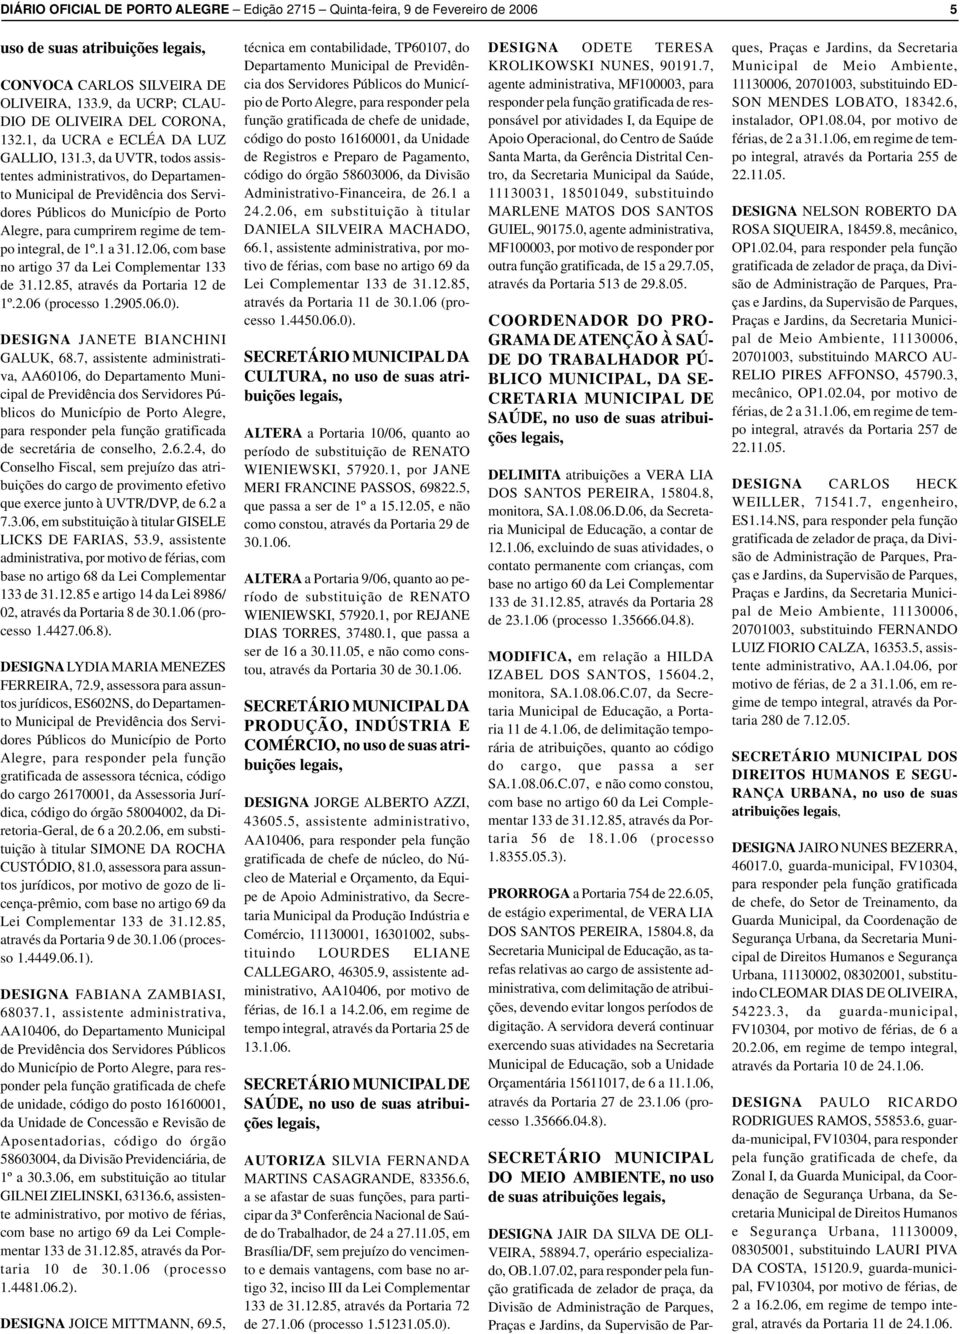 3, d UVTR, todos ssistentes dministrtivos, do Deprtmento Municipl de Previdênci dos Servidores Públicos do Município de Porto Alegre, pr cumprirem regime de tempo integrl, de 1º.1 31.12.